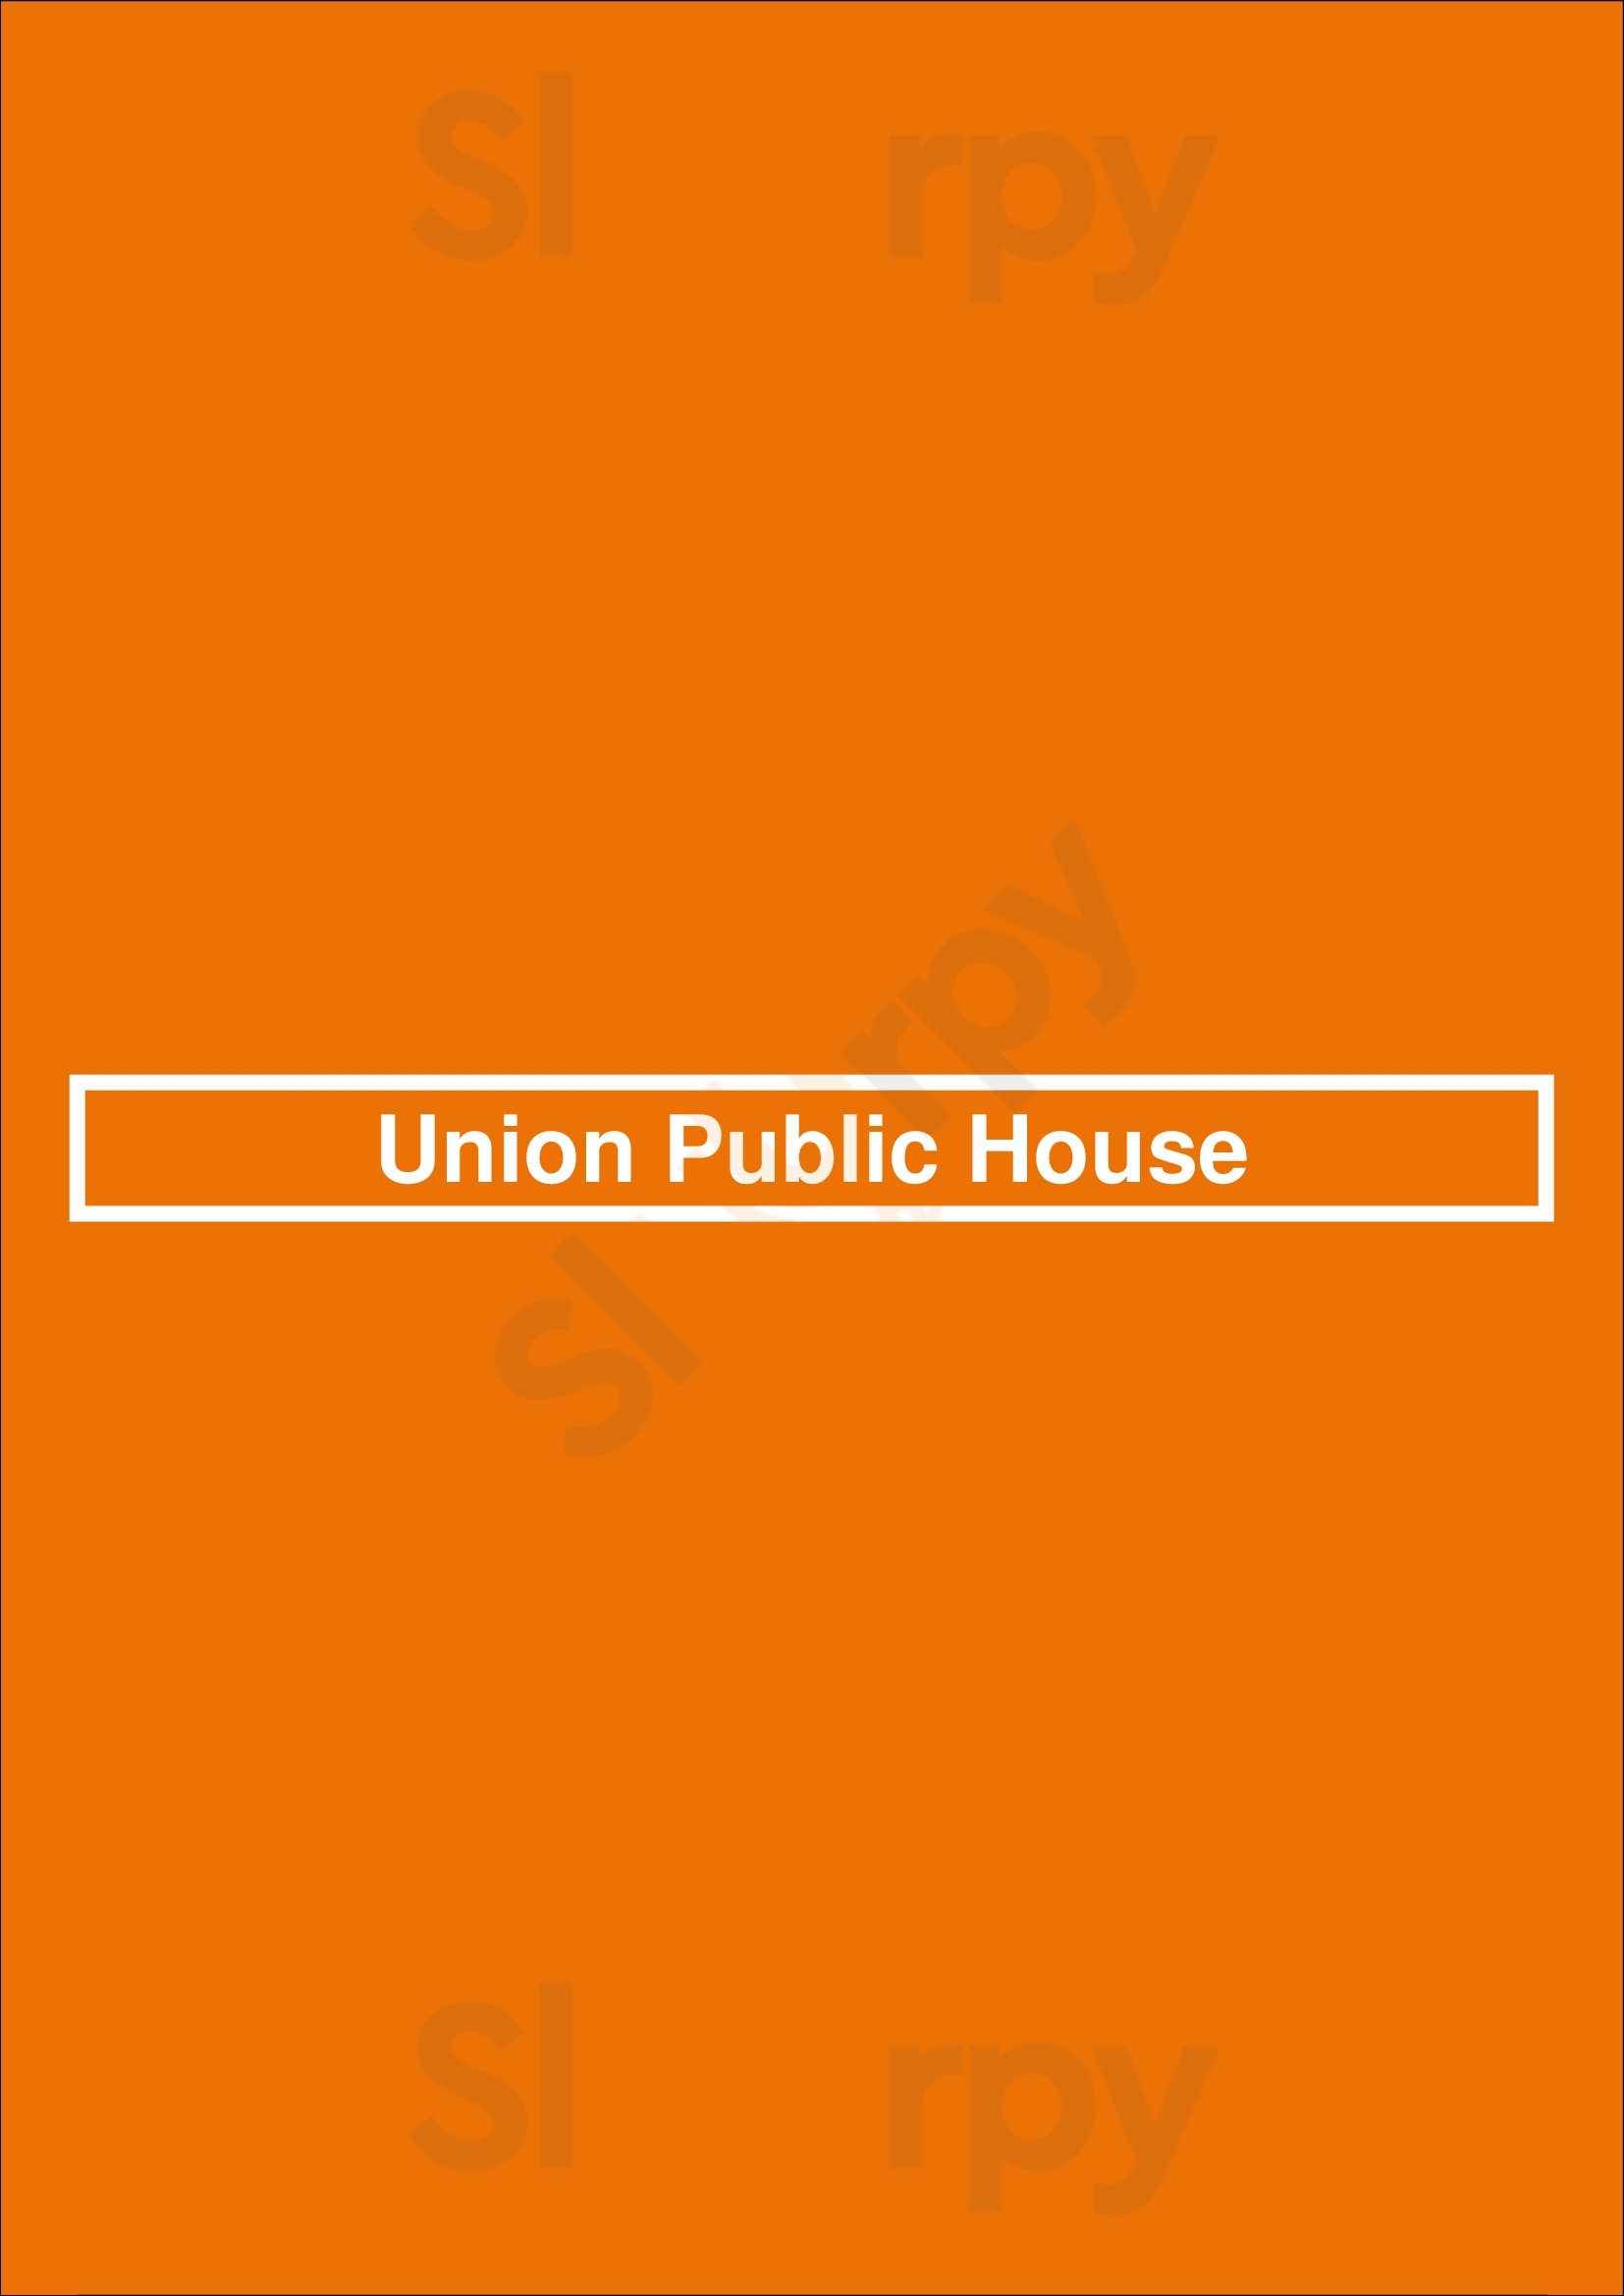 Union Public House Tucson Menu - 1